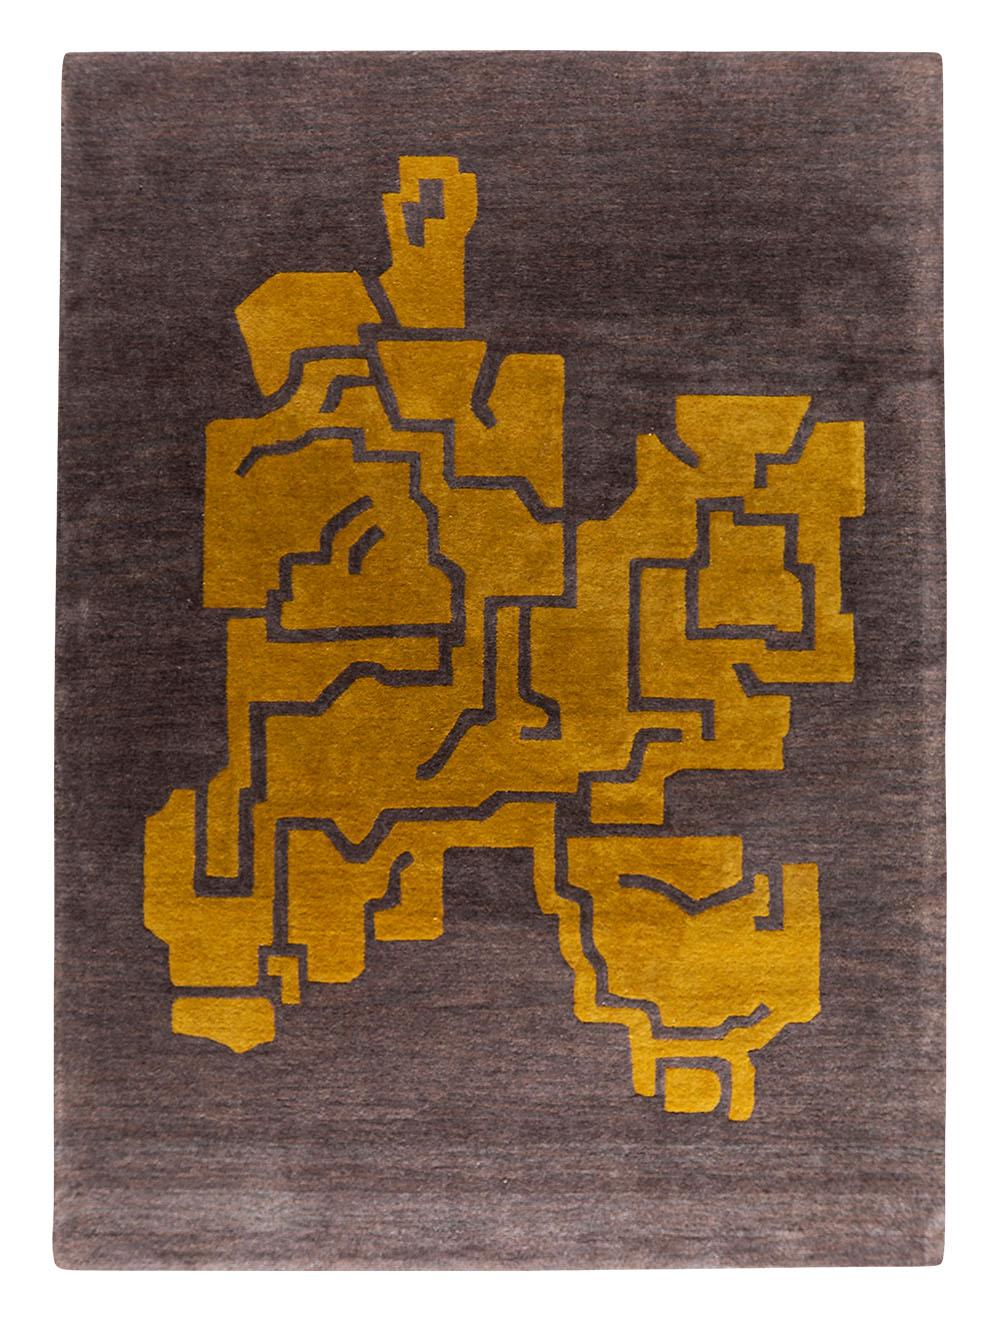 Fragment 1 Strukturen Teppich von Massimo Copenhagen
Entworfen von OEO Studio
Handgetuftet
MATERIALIEN: 50% Neuseelandwolle - 50% Bambus
Abmessungen: B 300 x H 400 cm.
Verfügbare Farben: Fragment 1, Fragment 2, Fragment 2 mit Bordüre, Fragment 3 und